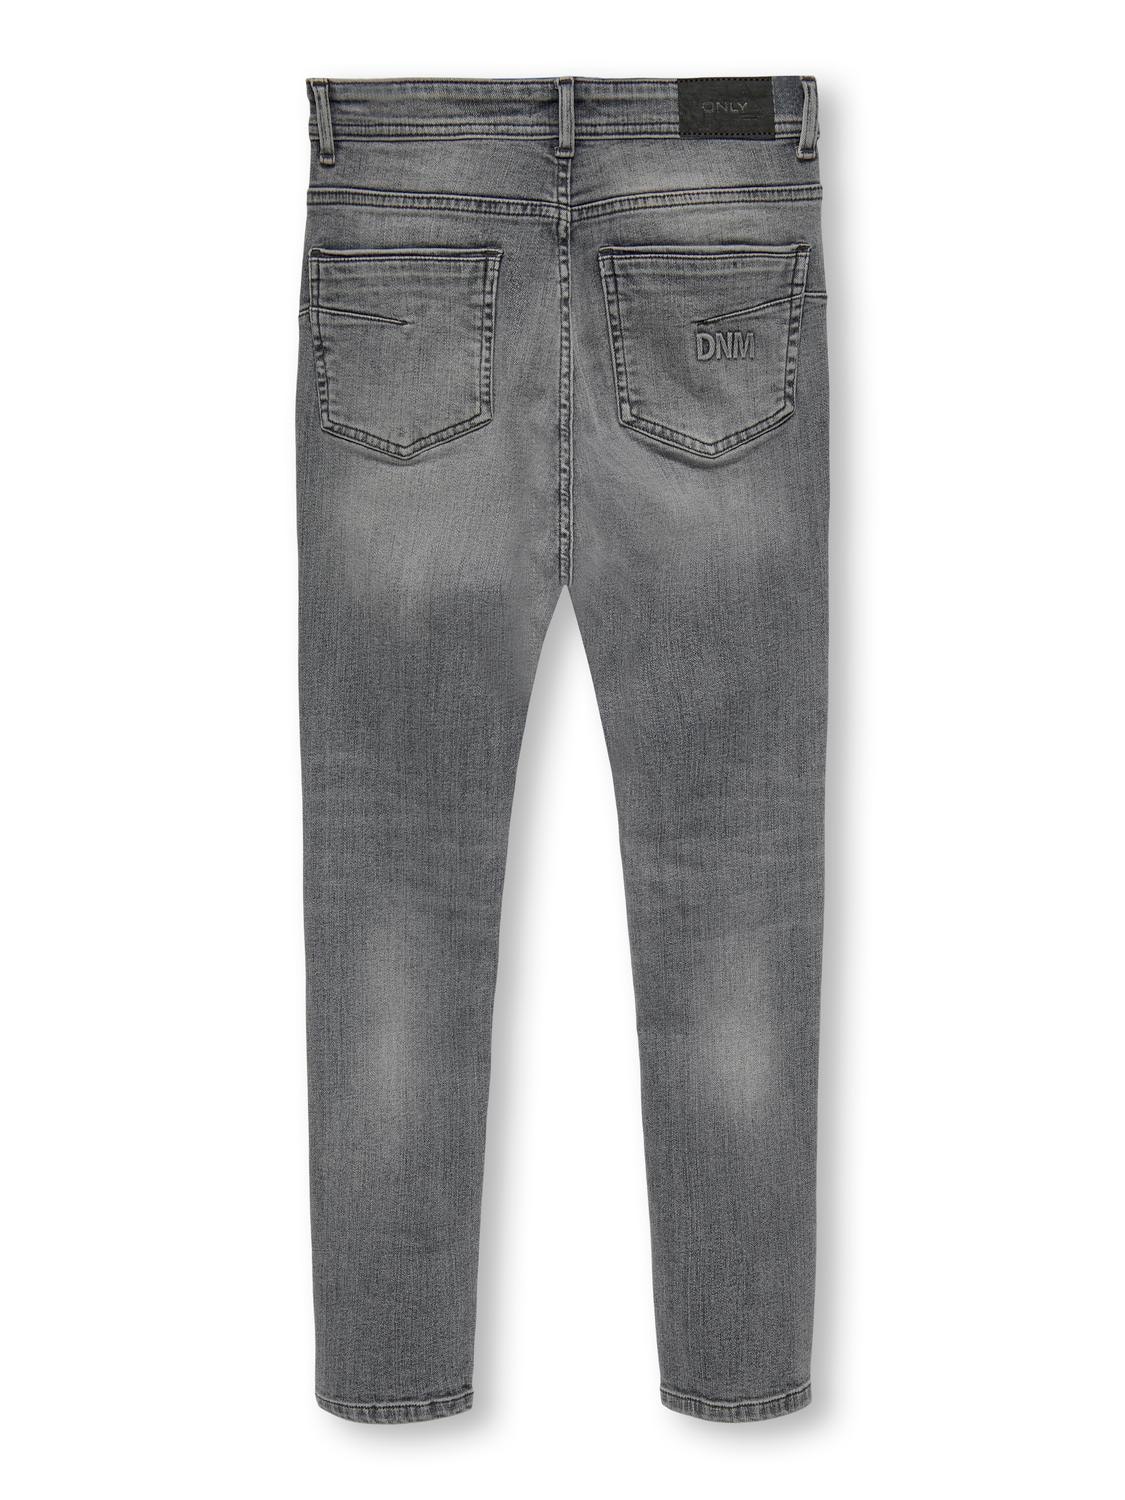 ONLY KOBDraper Venice Tapered Jeans Denim -Grey Denim - 15309838